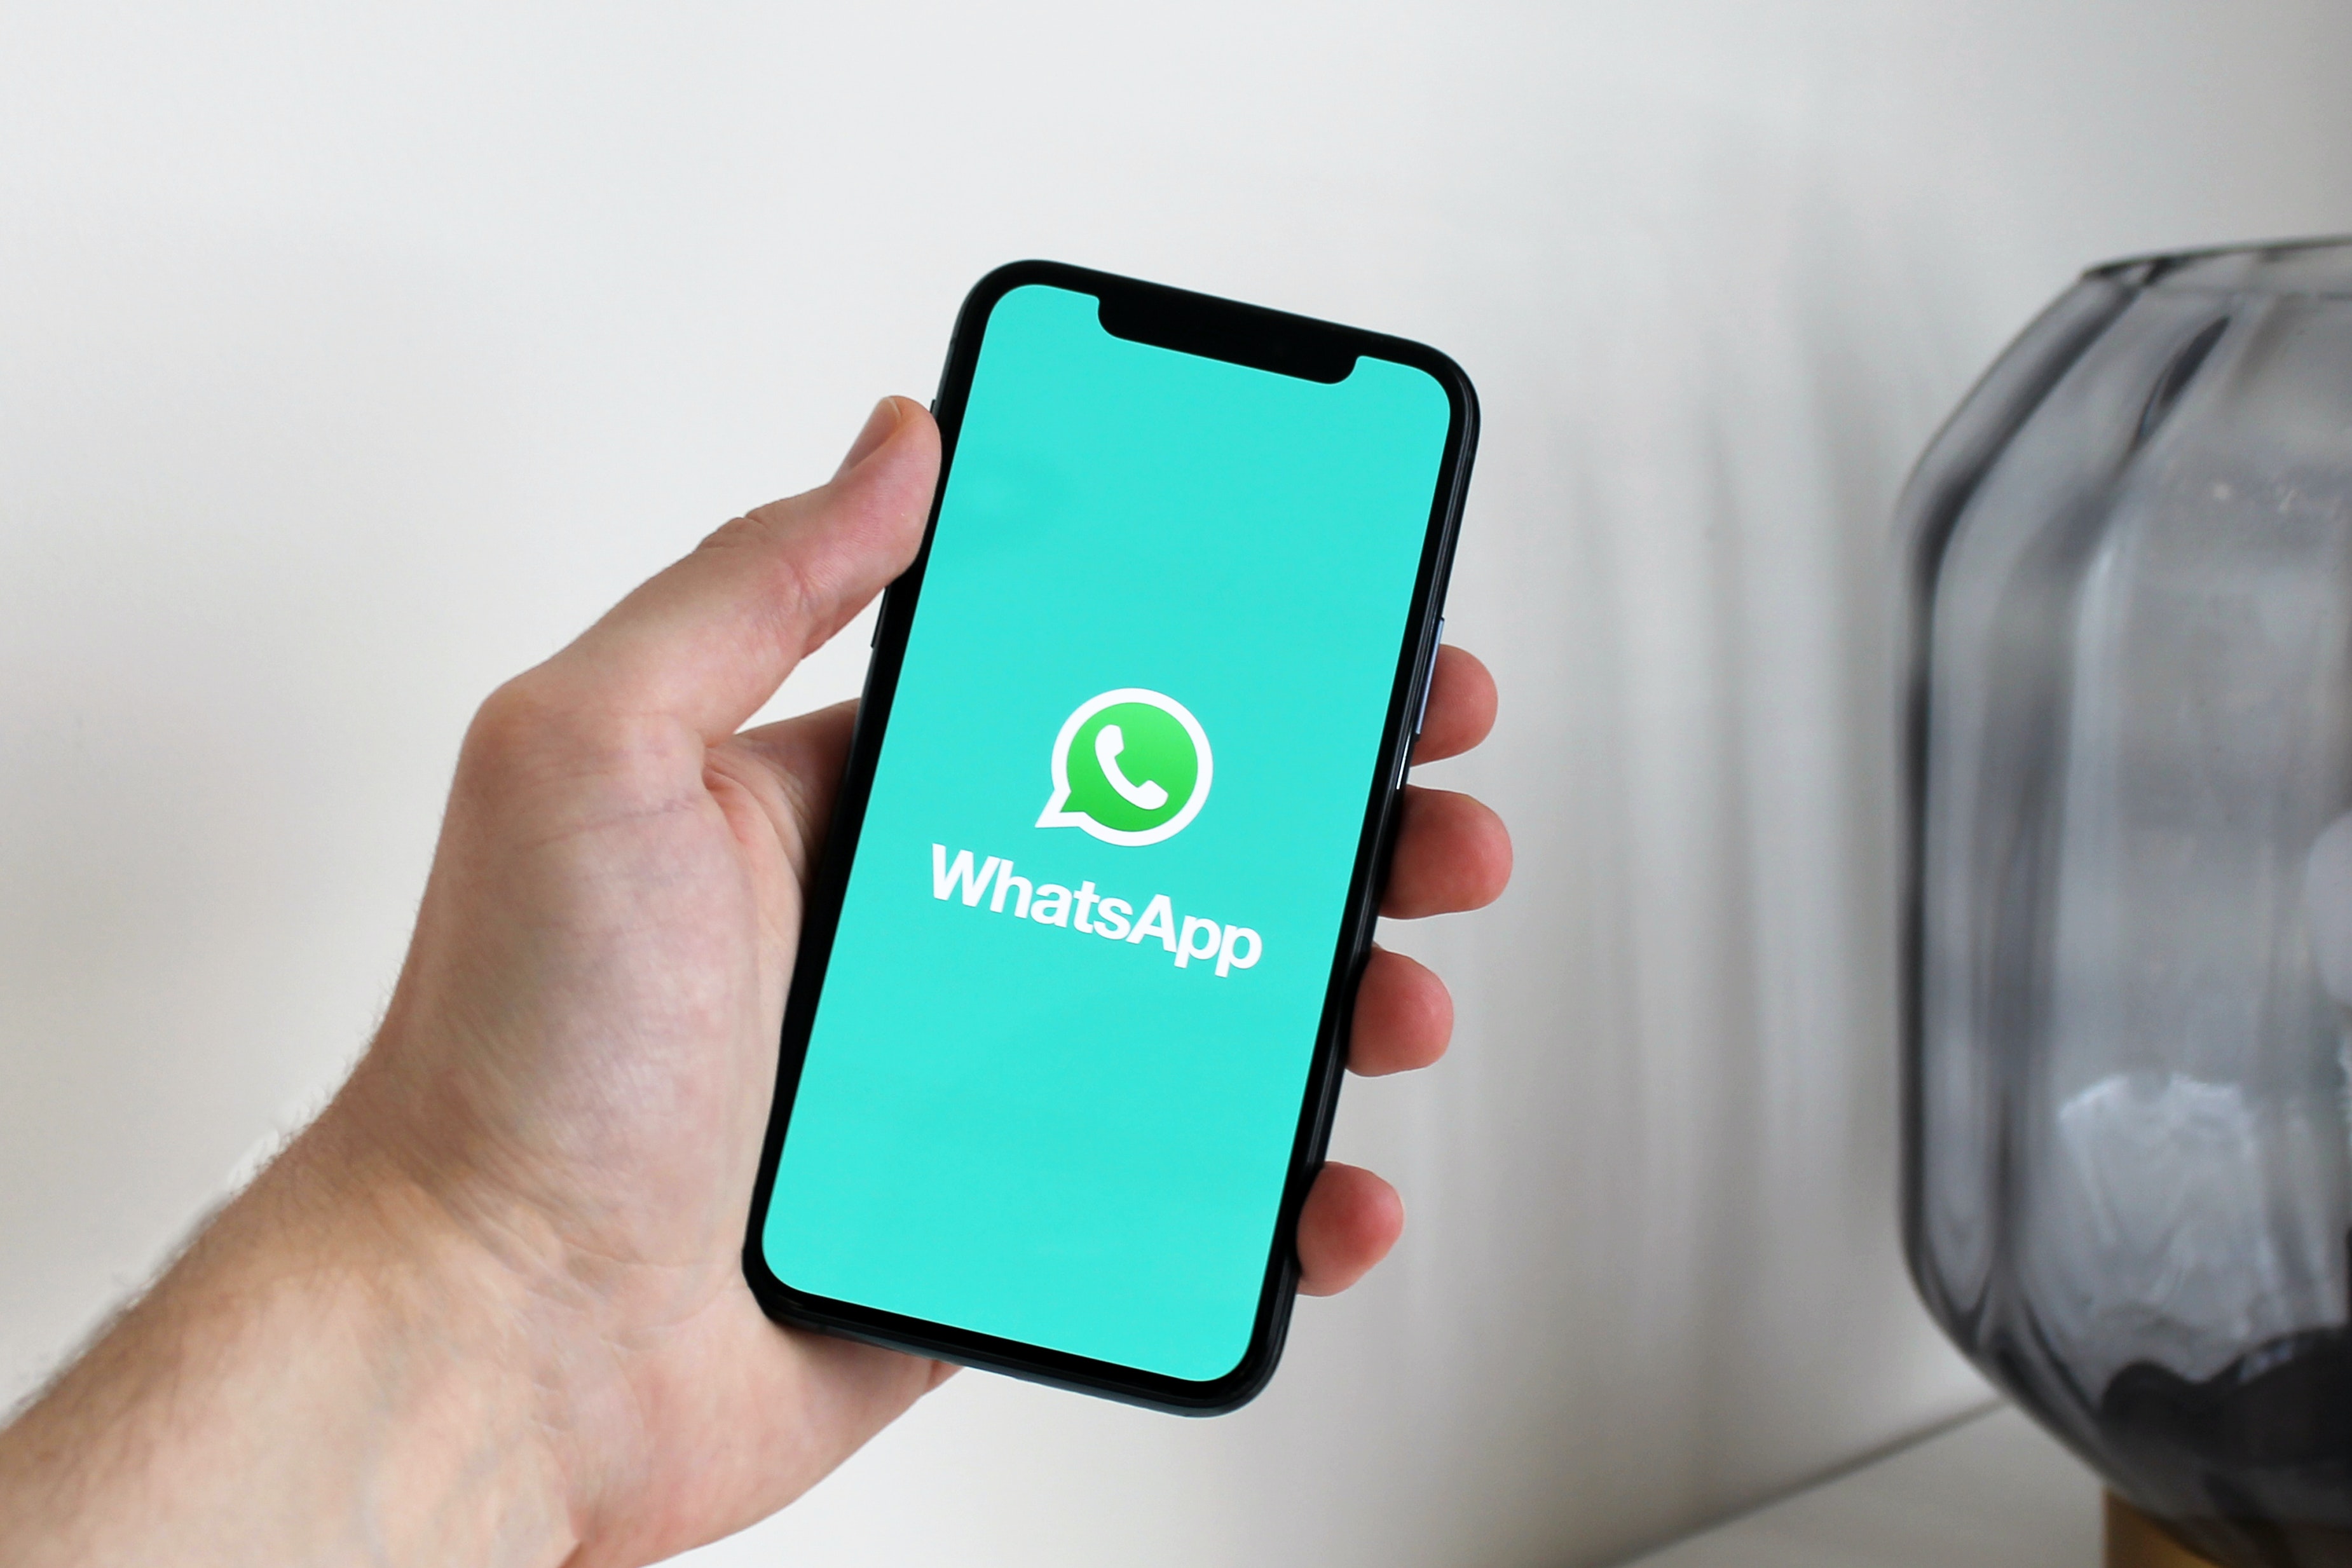 WhatsApp Business, la plataforma para las empresas, permitirá realizar ‘Comunidades’ en los diferentes grupos que trabajan o hablan de un mismo tema.